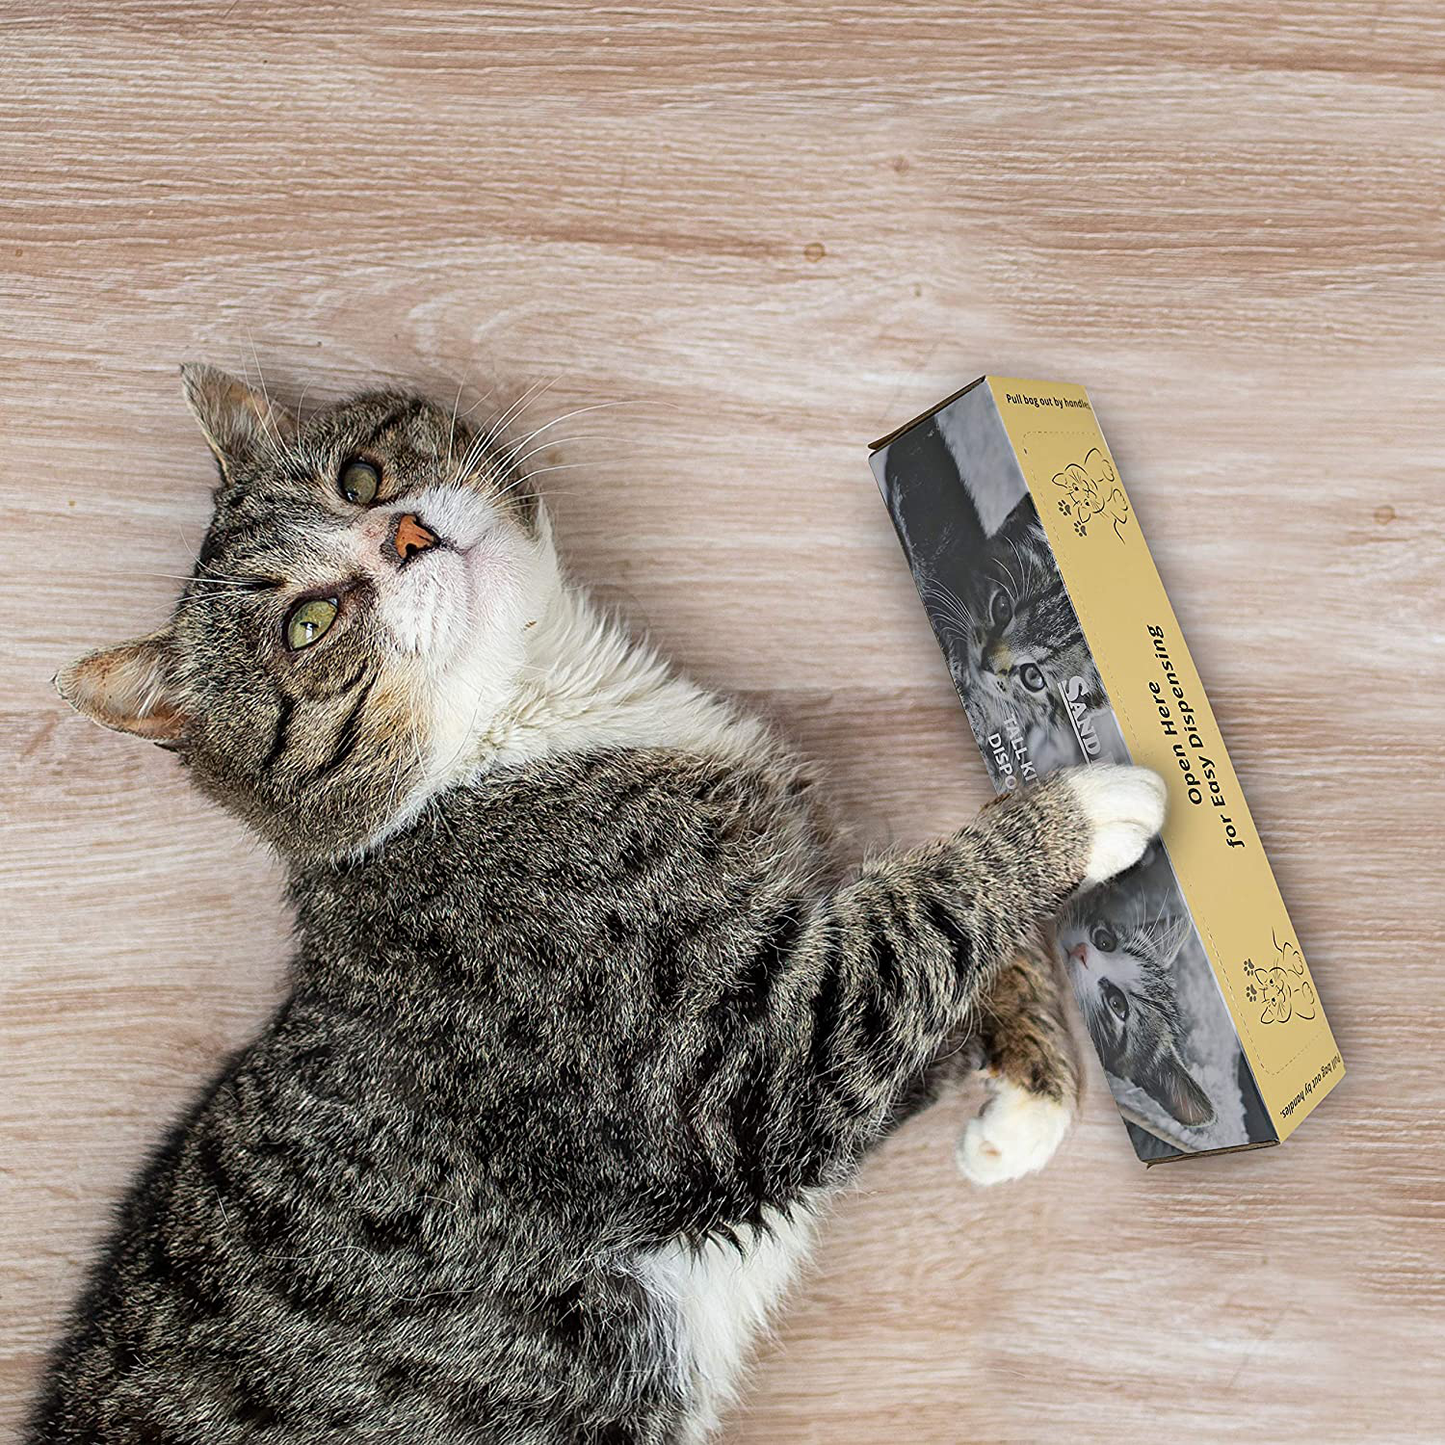 Sand Dipper Cat Litter Waste Bags | Strong Thick Odor Sealing (Tall 35 Roll) Animals & Pet Supplies > Pet Supplies > Cat Supplies > Cat Litter Box Liners Sand Dipper   